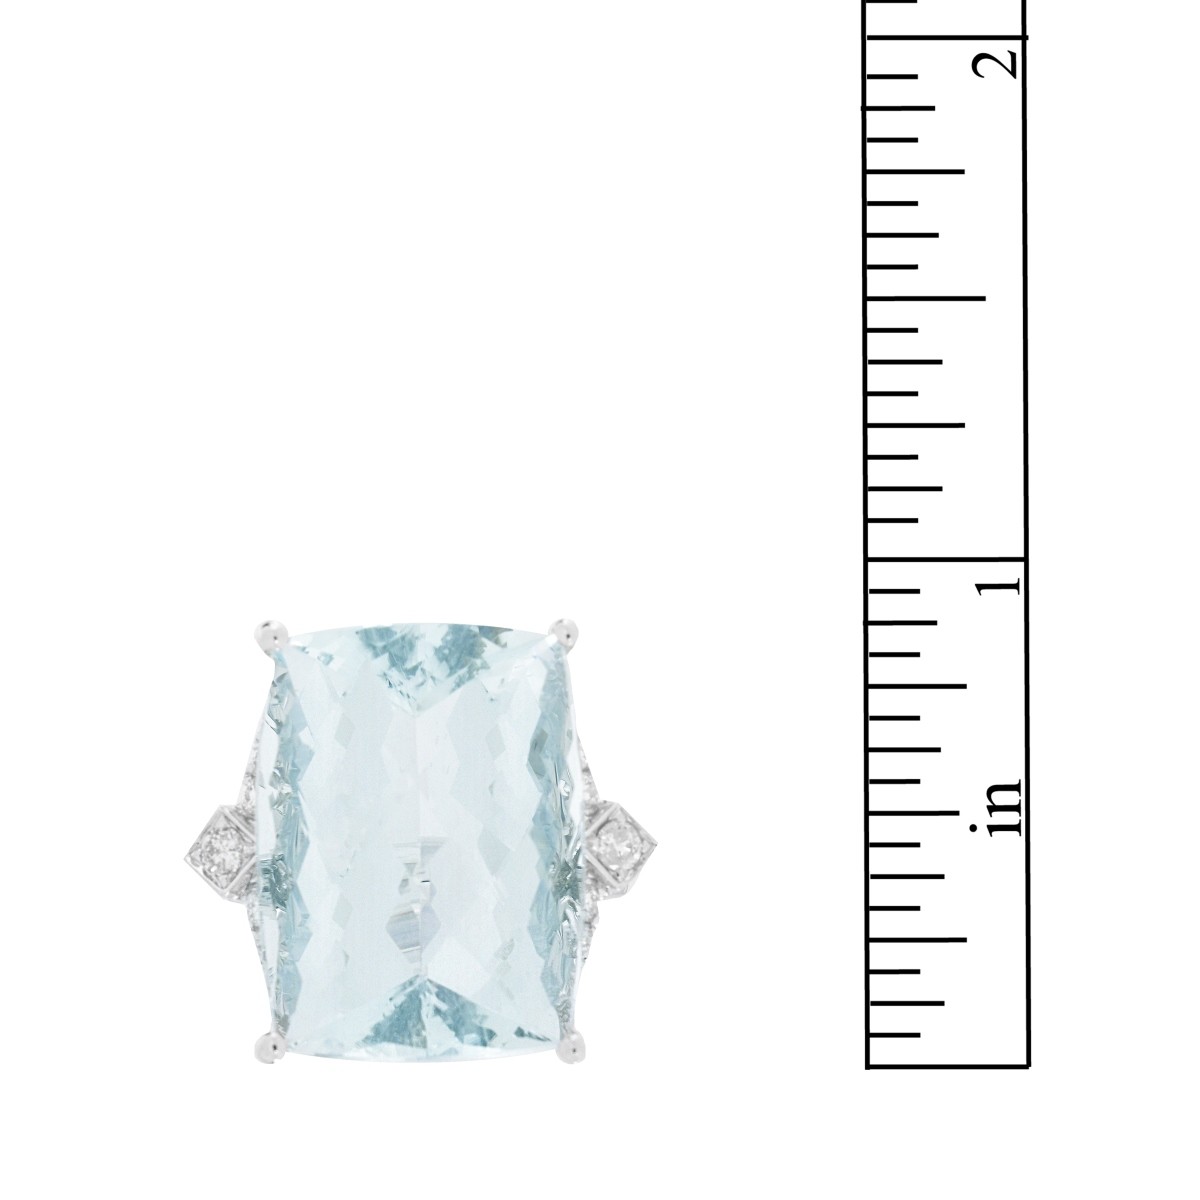 Aquamarine, Diamond and 14K Ring